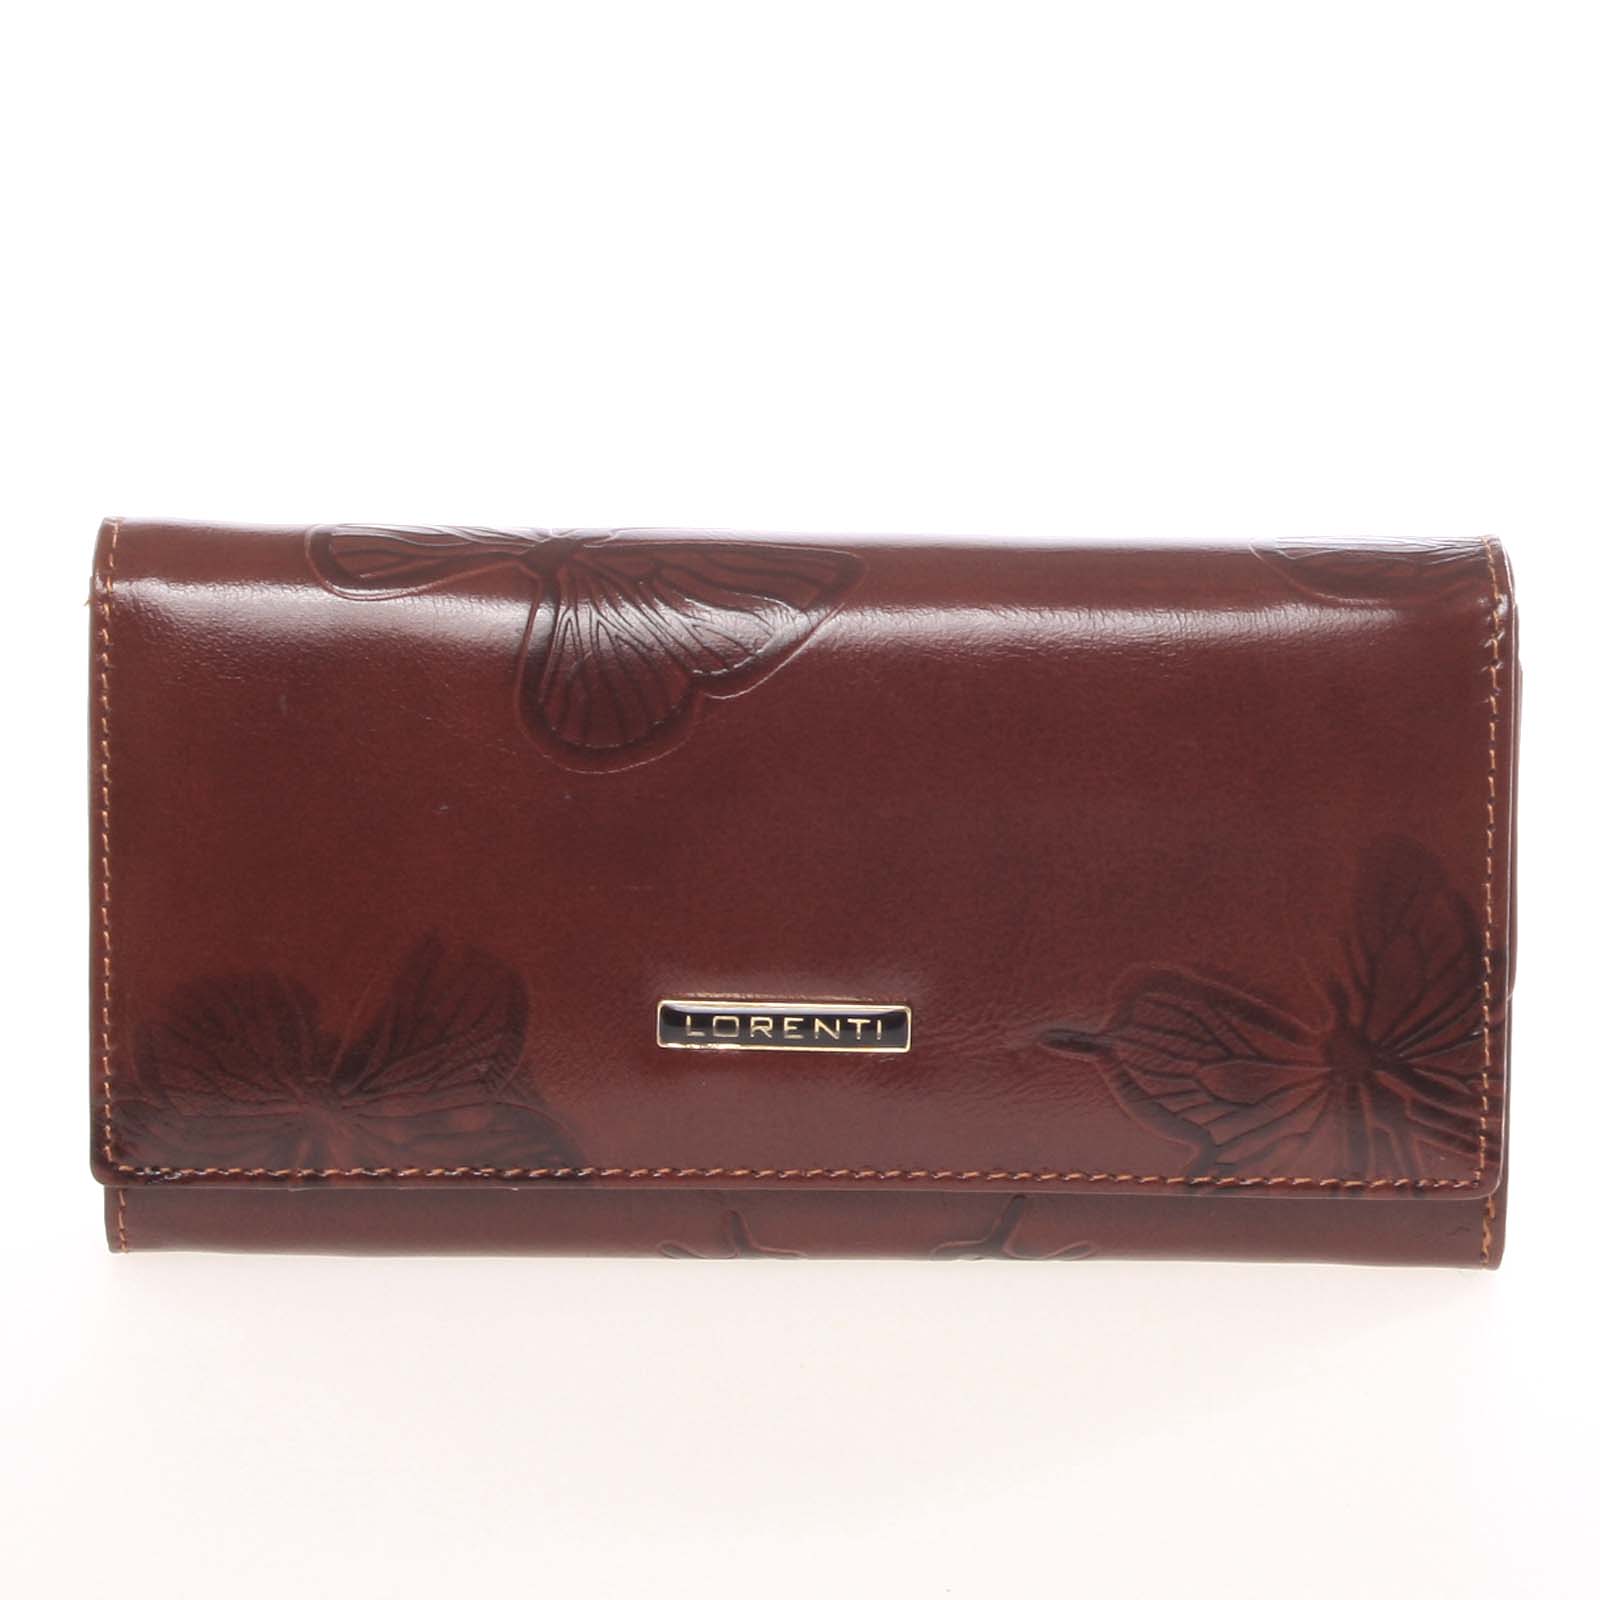 Luxusní dámská kožená peněženka hnědá - Lorenti 4003